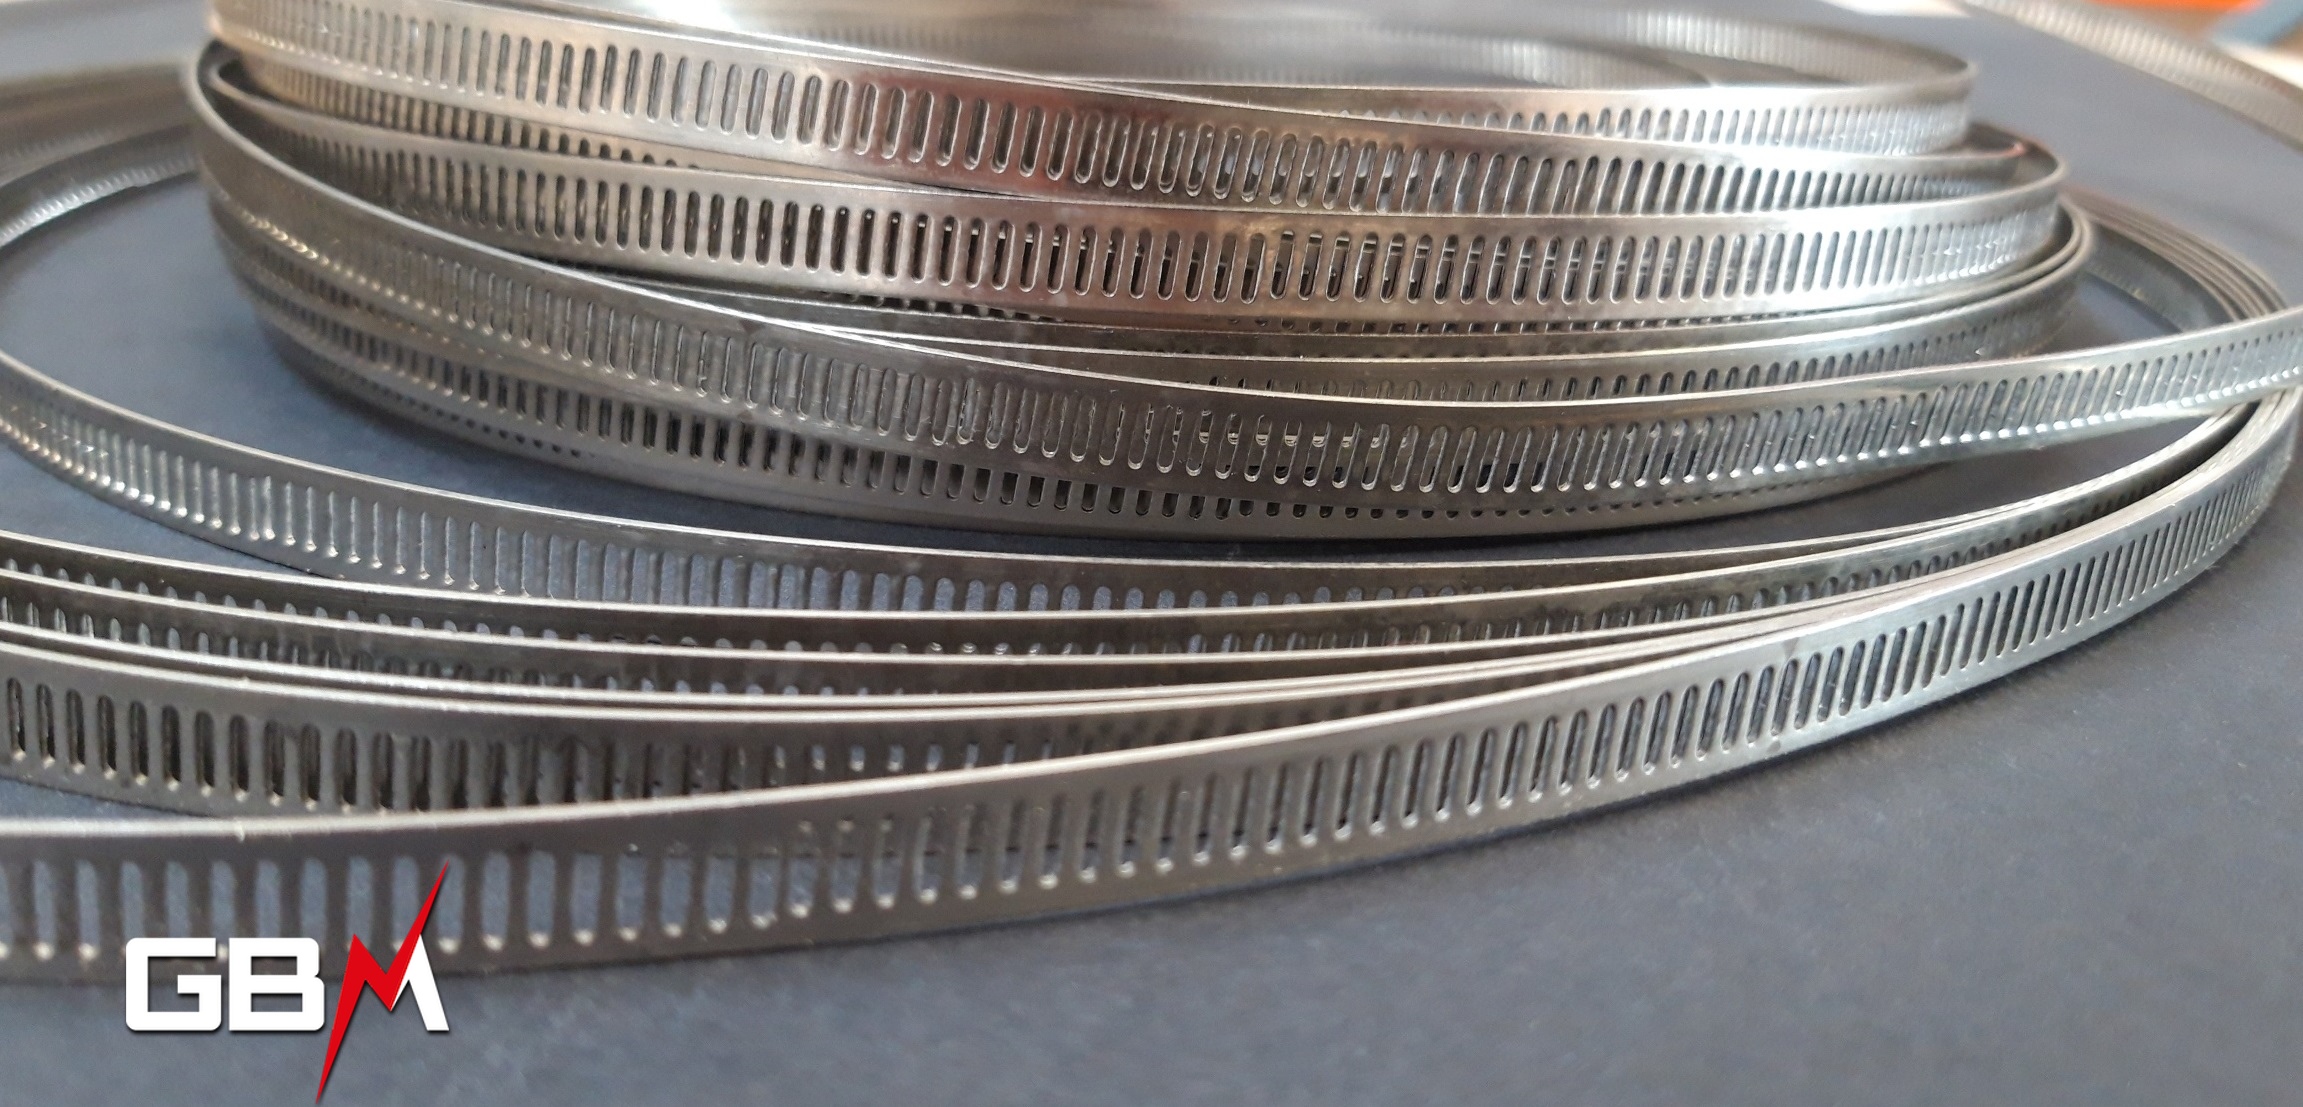 Collier de serrage Inox bande ajourée sans fin largeur 8 mm – bobine de 30m